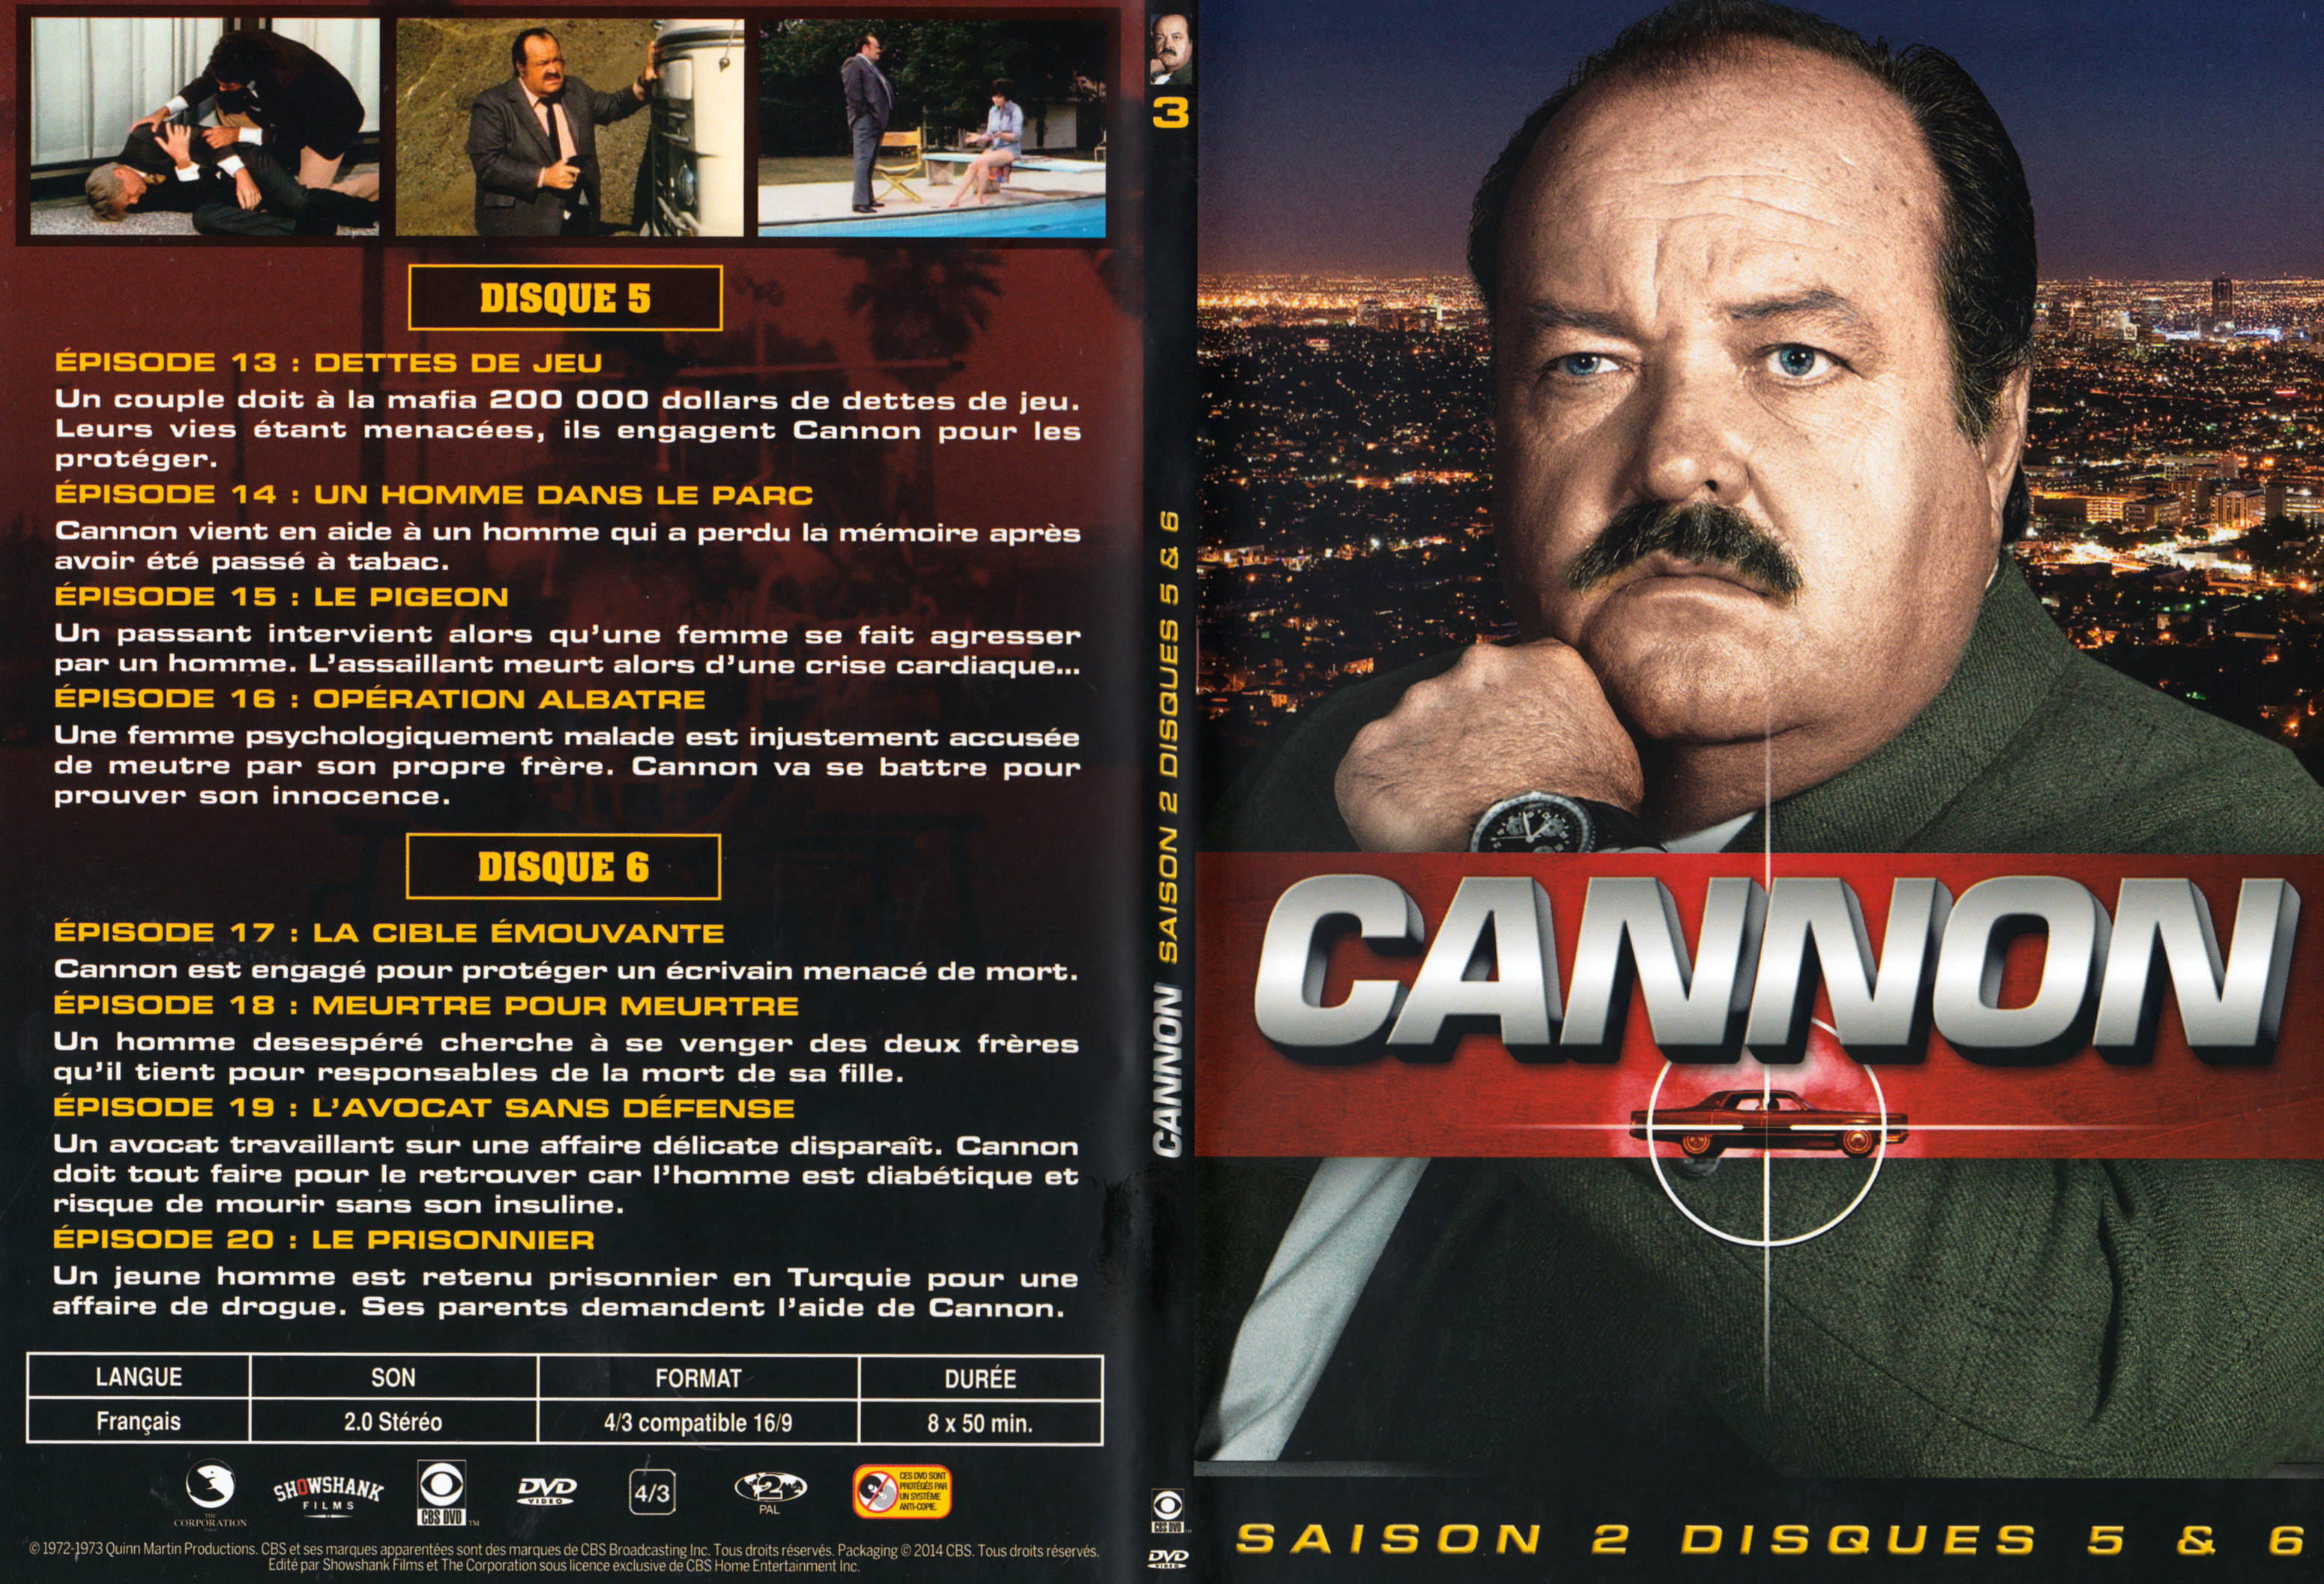 Jaquette DVD Cannon Saison 2 DVD 3